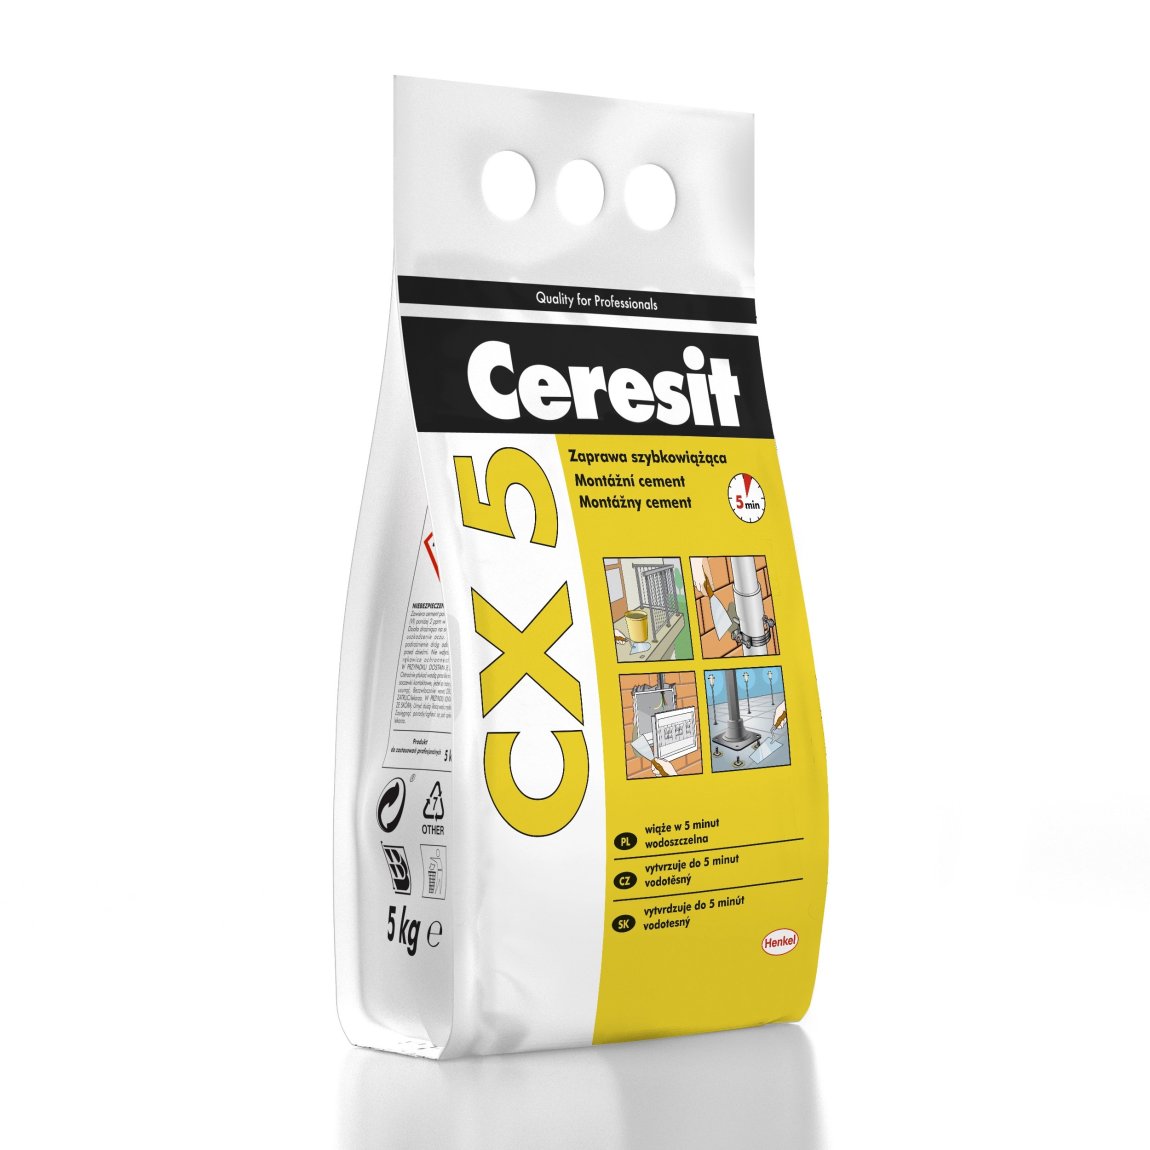 CERESIT CX5 montážní cement 5kg / plastový pytel - Suché směsi a stavební chemie malty a cementy